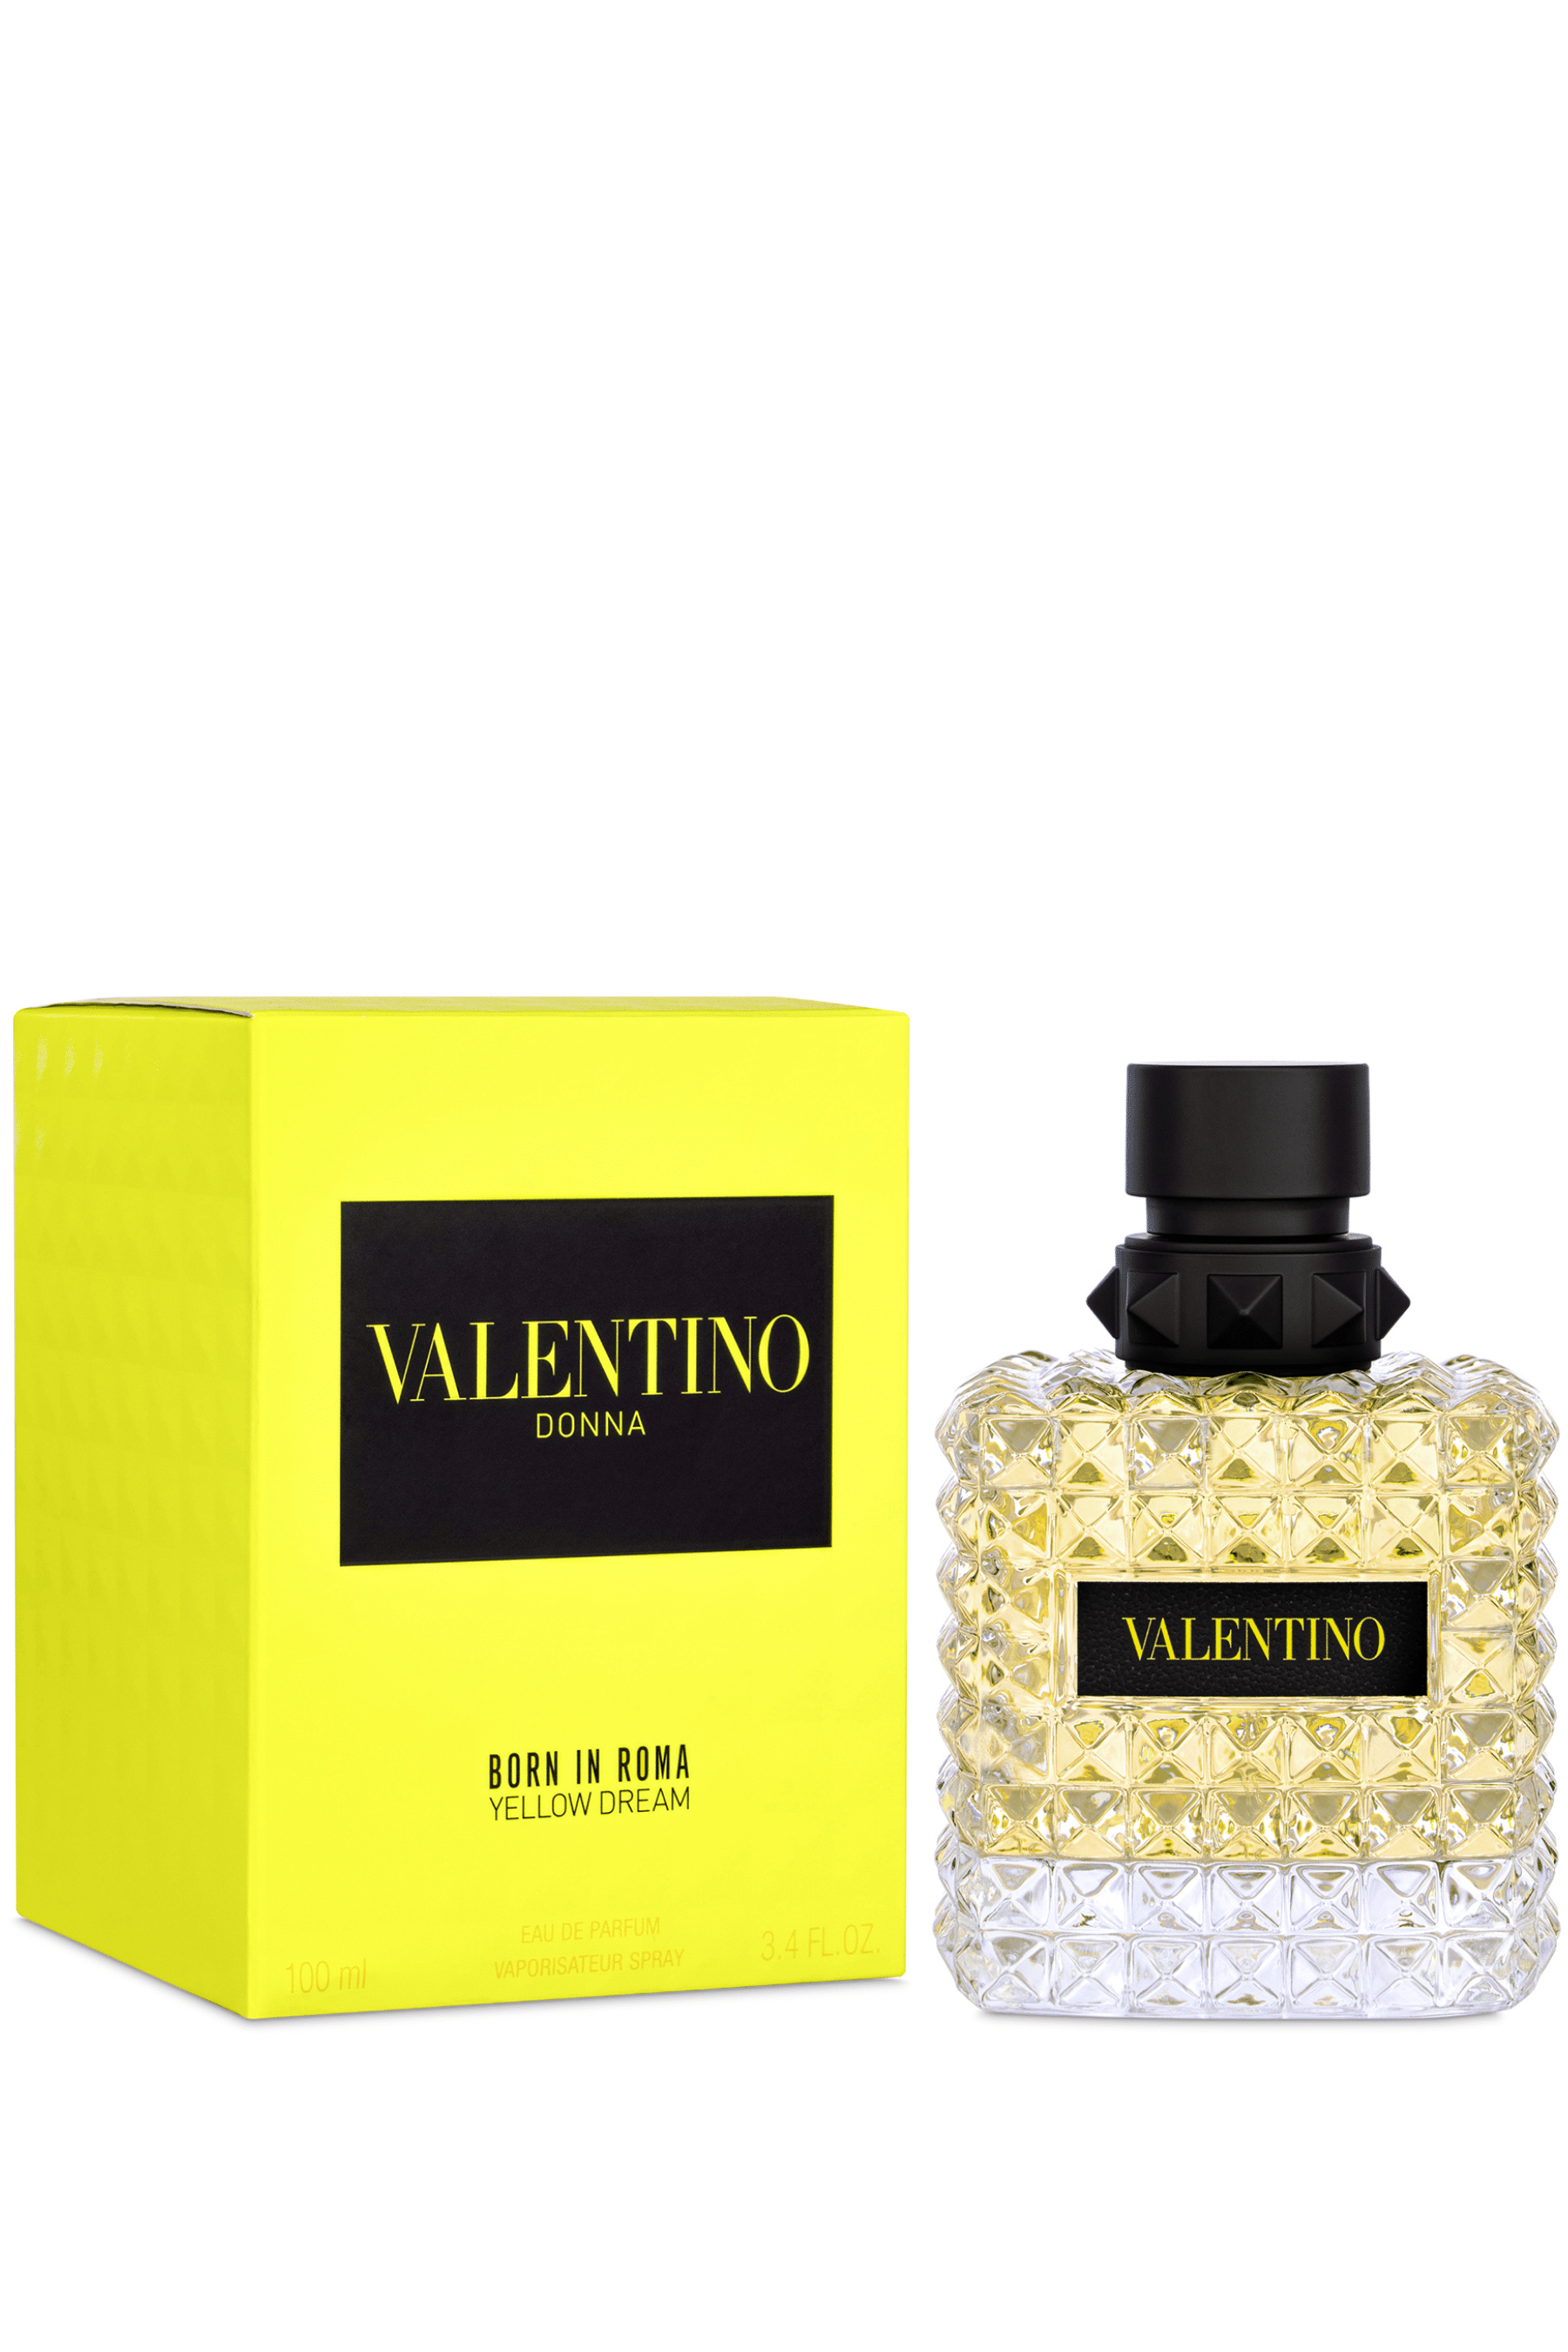 Roma REBL Born in Eau - Parfum de Valentino | Yellow Dream